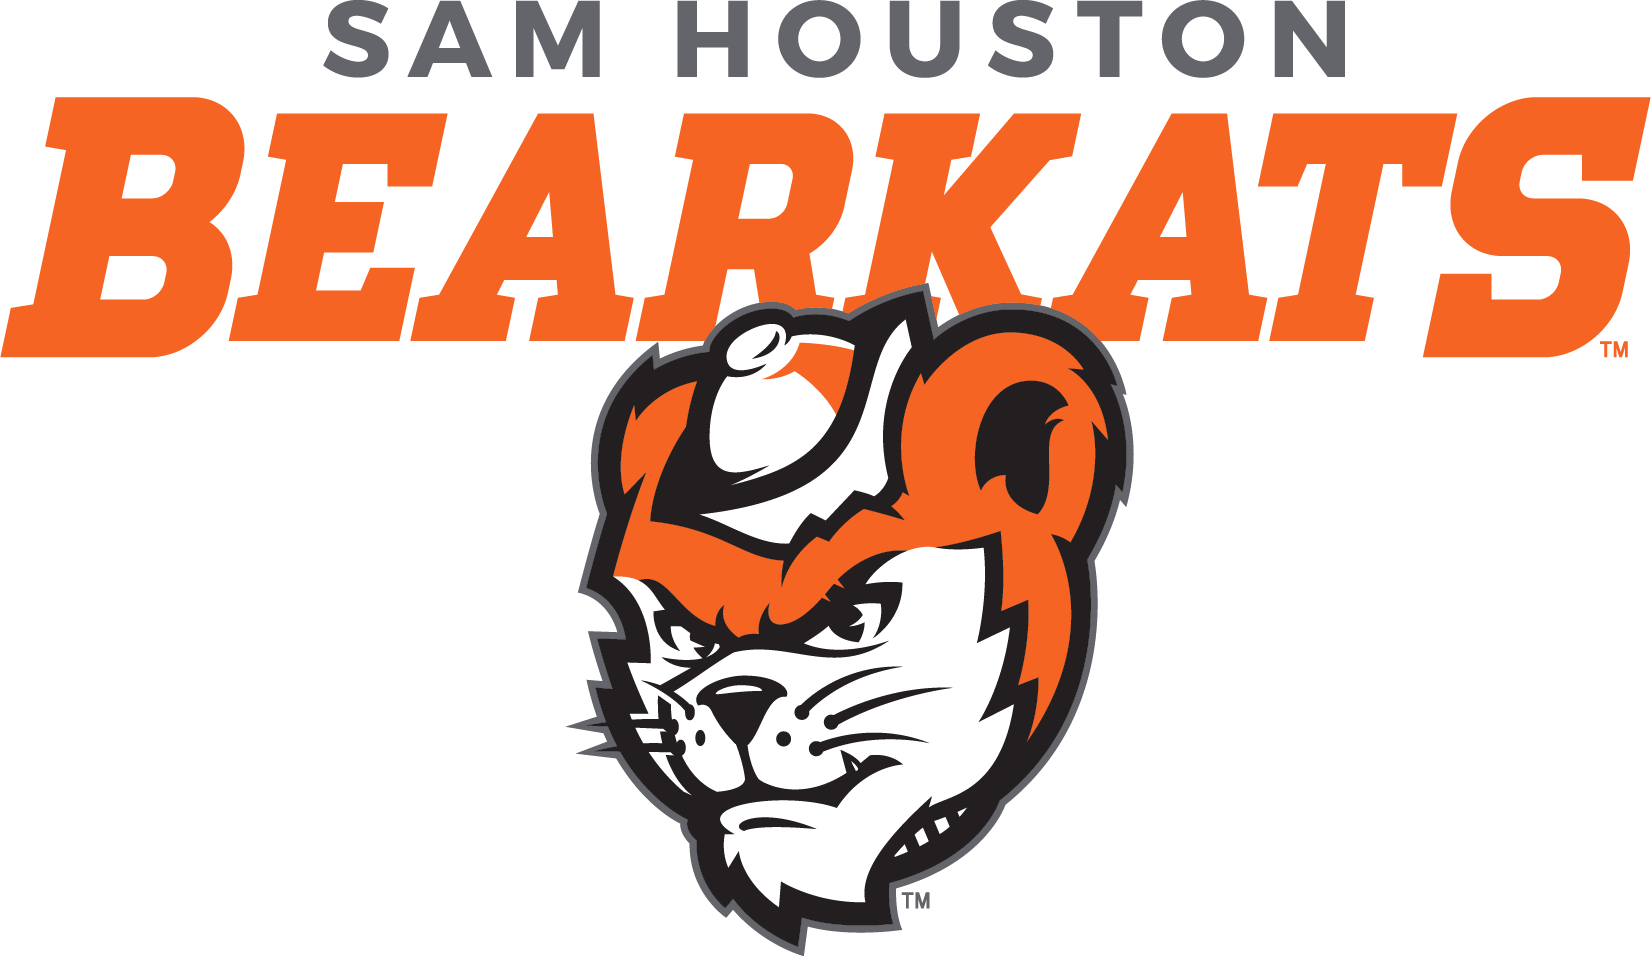 Sam Houston State Bearkats